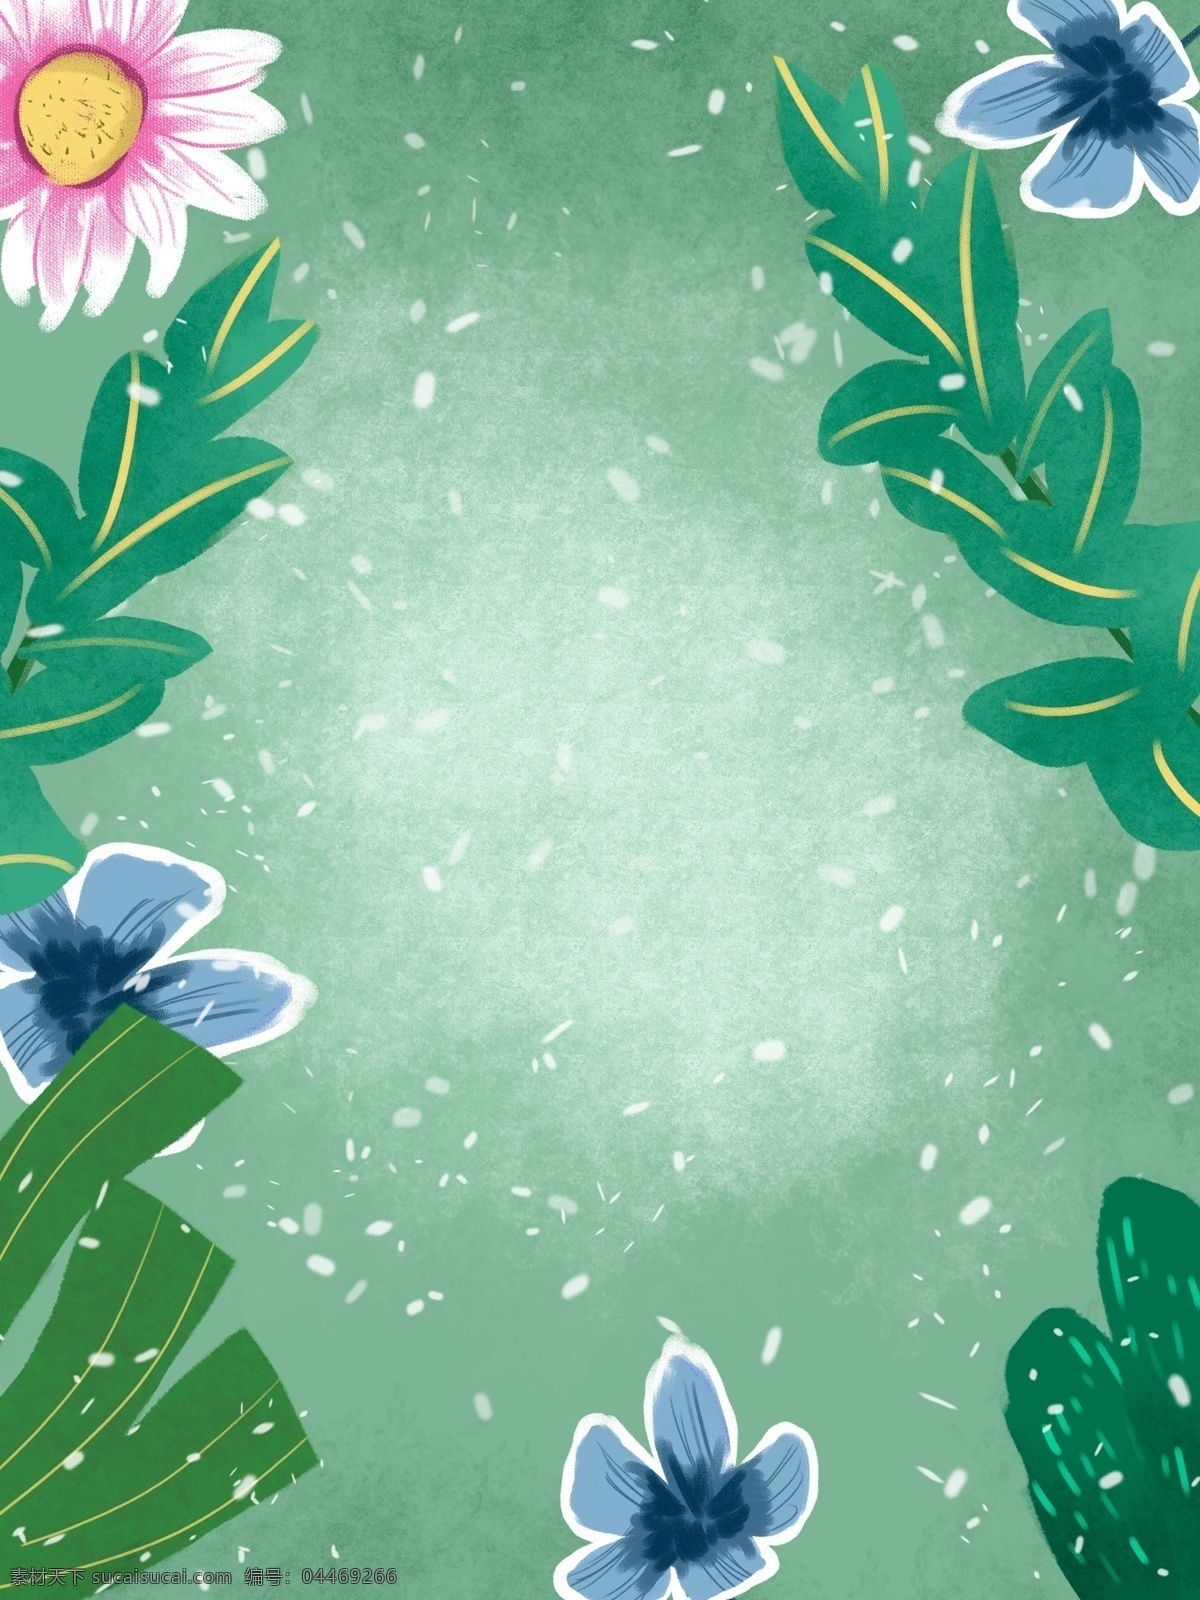 绿色 唯美 小 清晰 植物 花卉 背景 插画背景 手绘背景 卡通背景 绿色背景 小清晰背景 通用背景 植物花卉背景